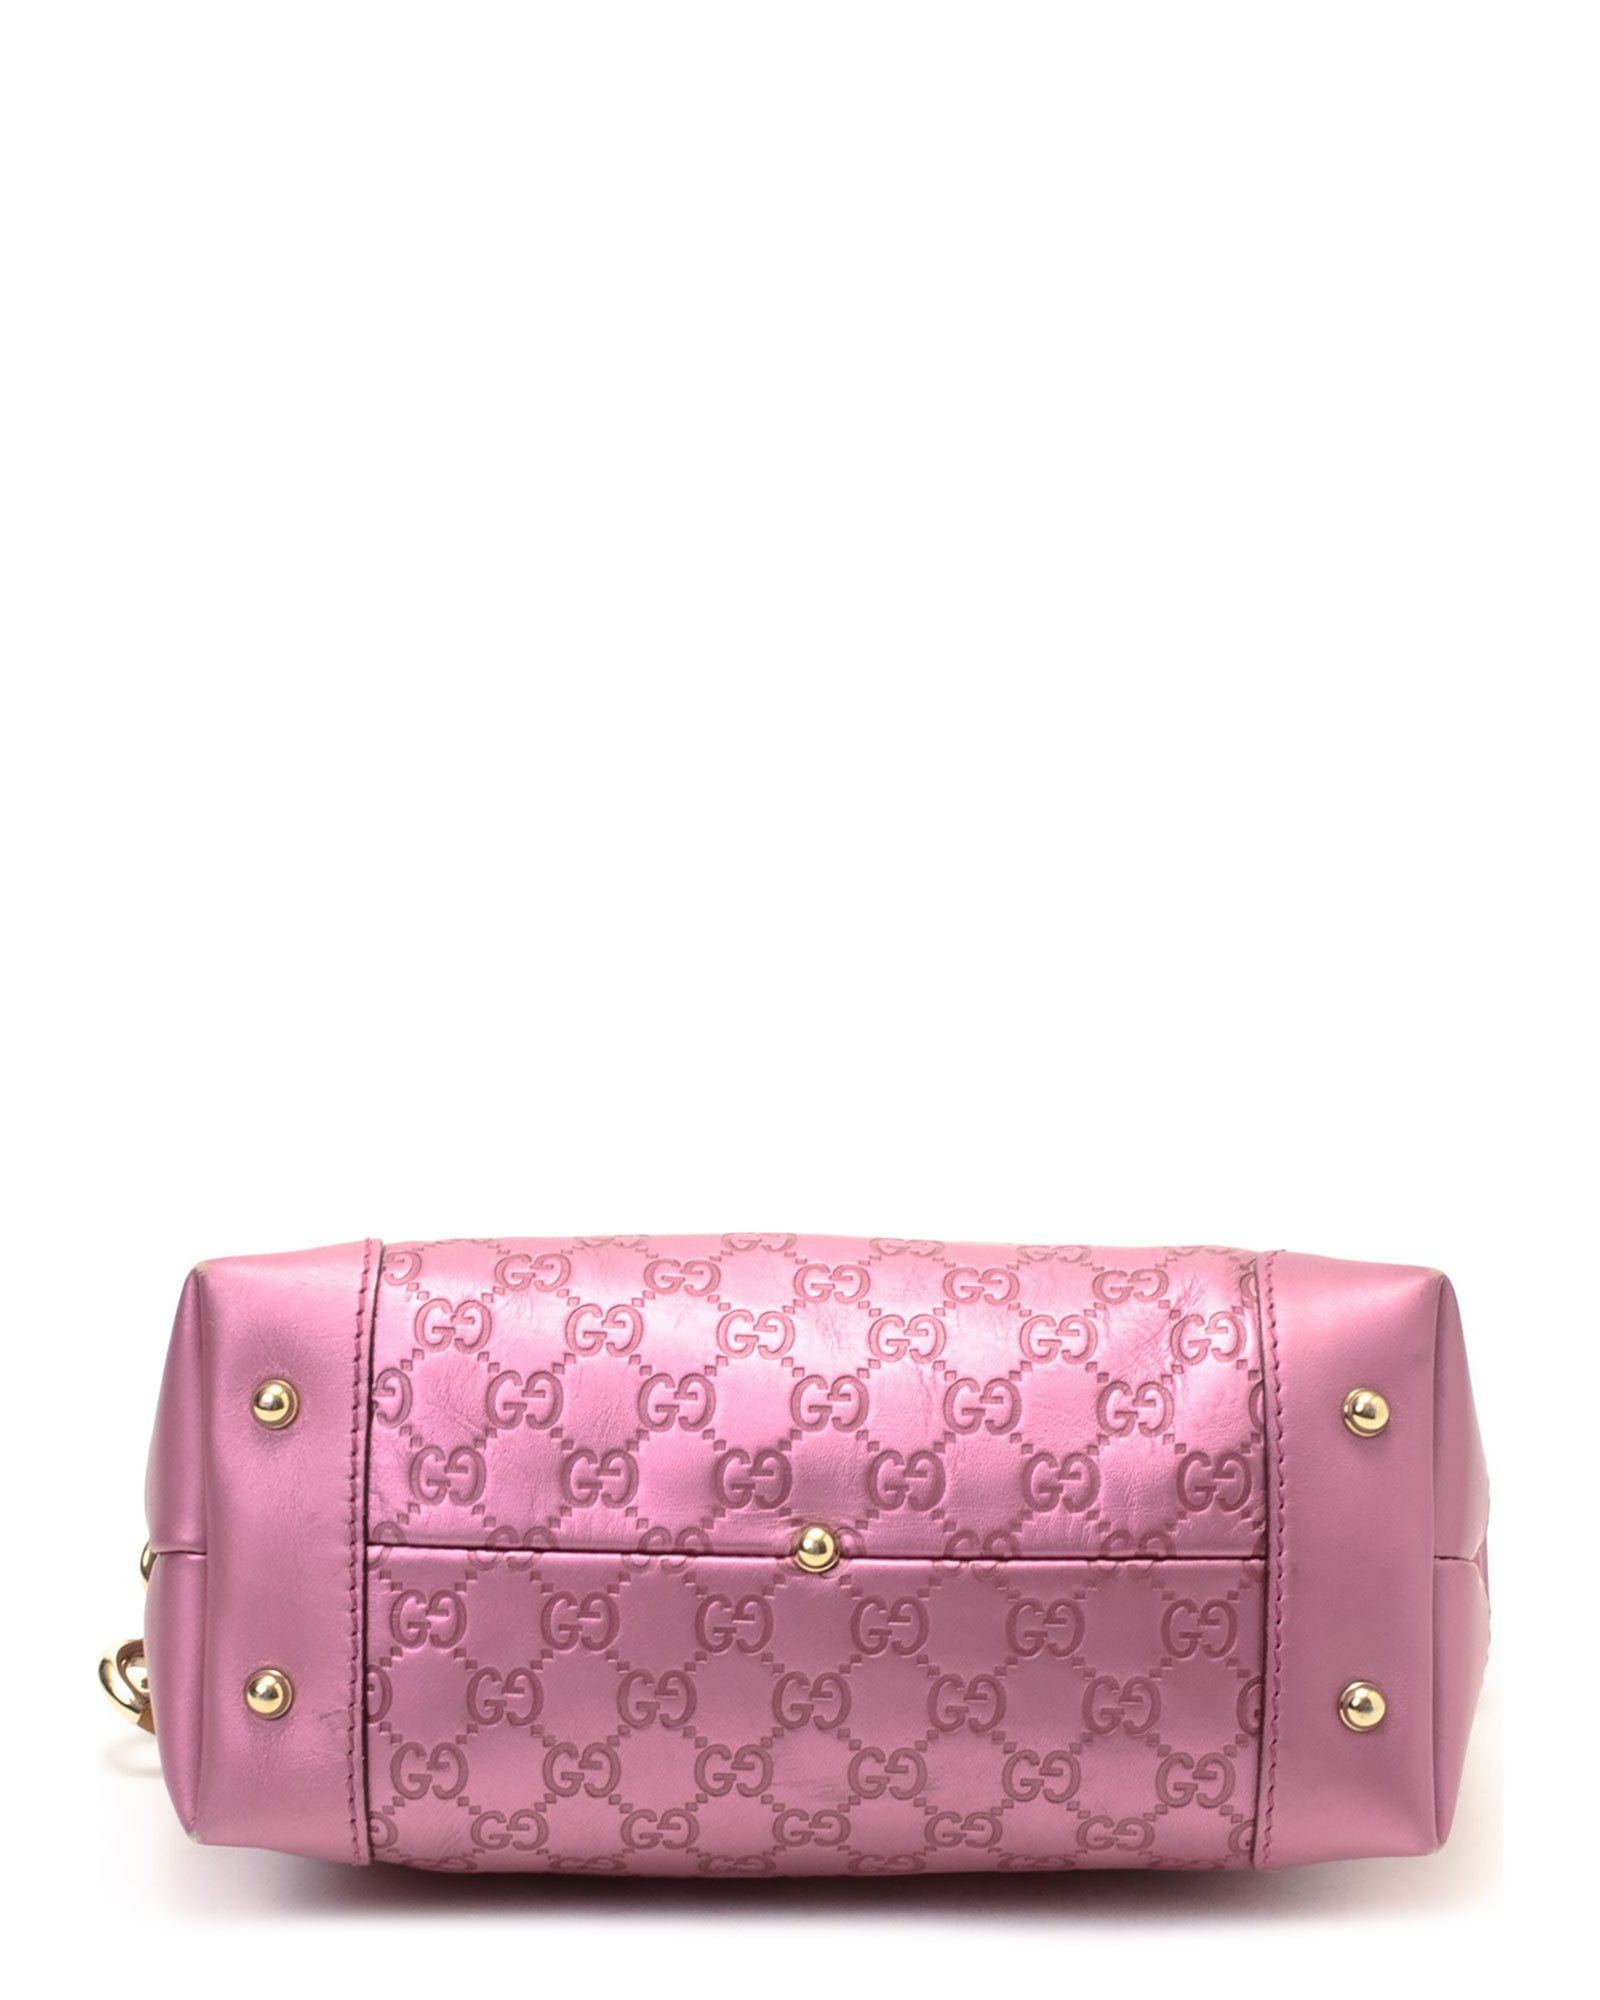 Lyst - Gucci Pink Shoulder Bag - Vintage in Pink